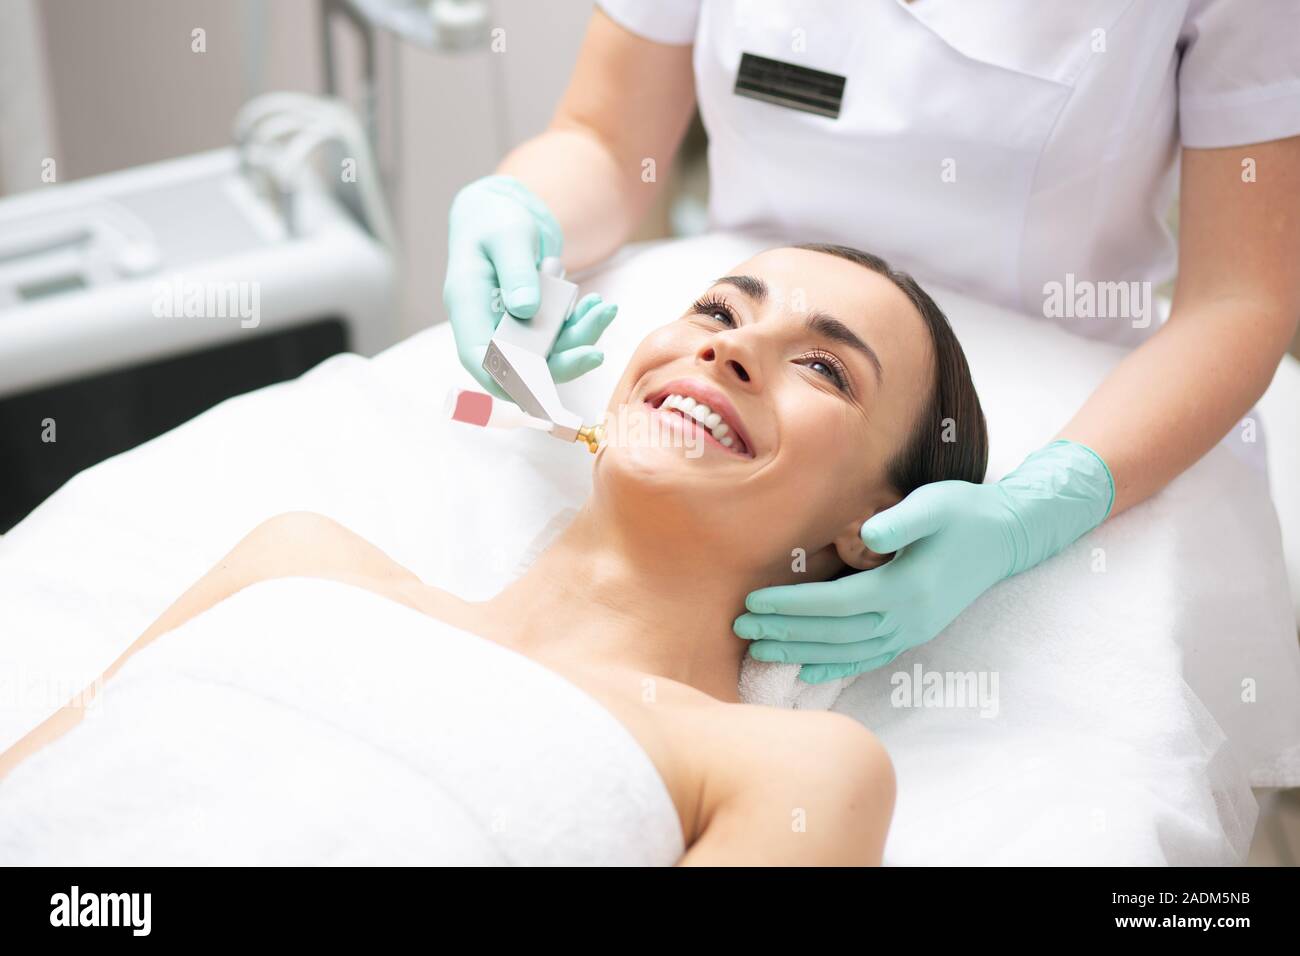 Client eccitato sorridente durante il fresco ossigeno procedura di sollevamento Foto Stock